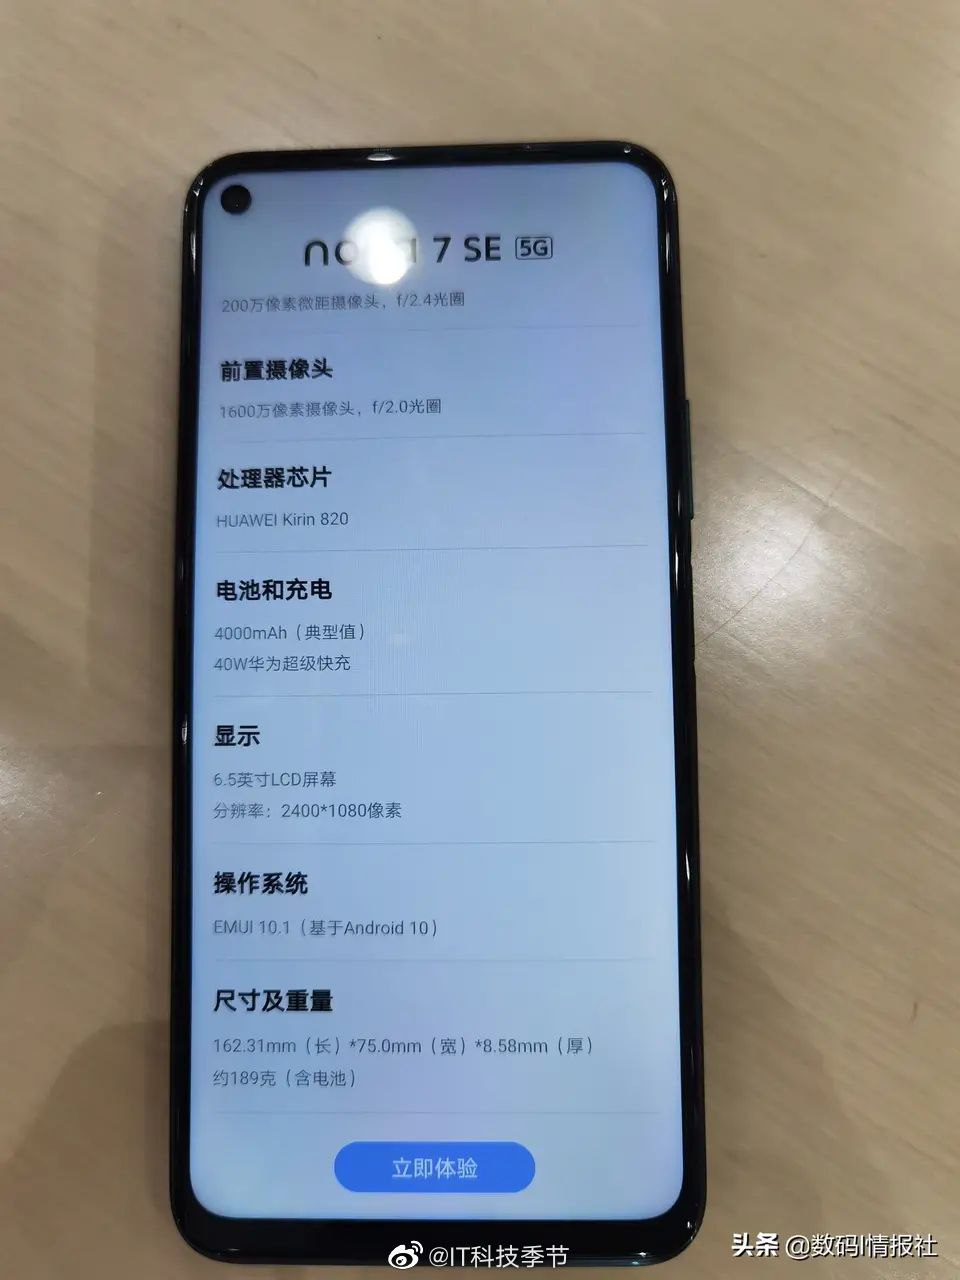 Huawei Nova 7 SE Leaked